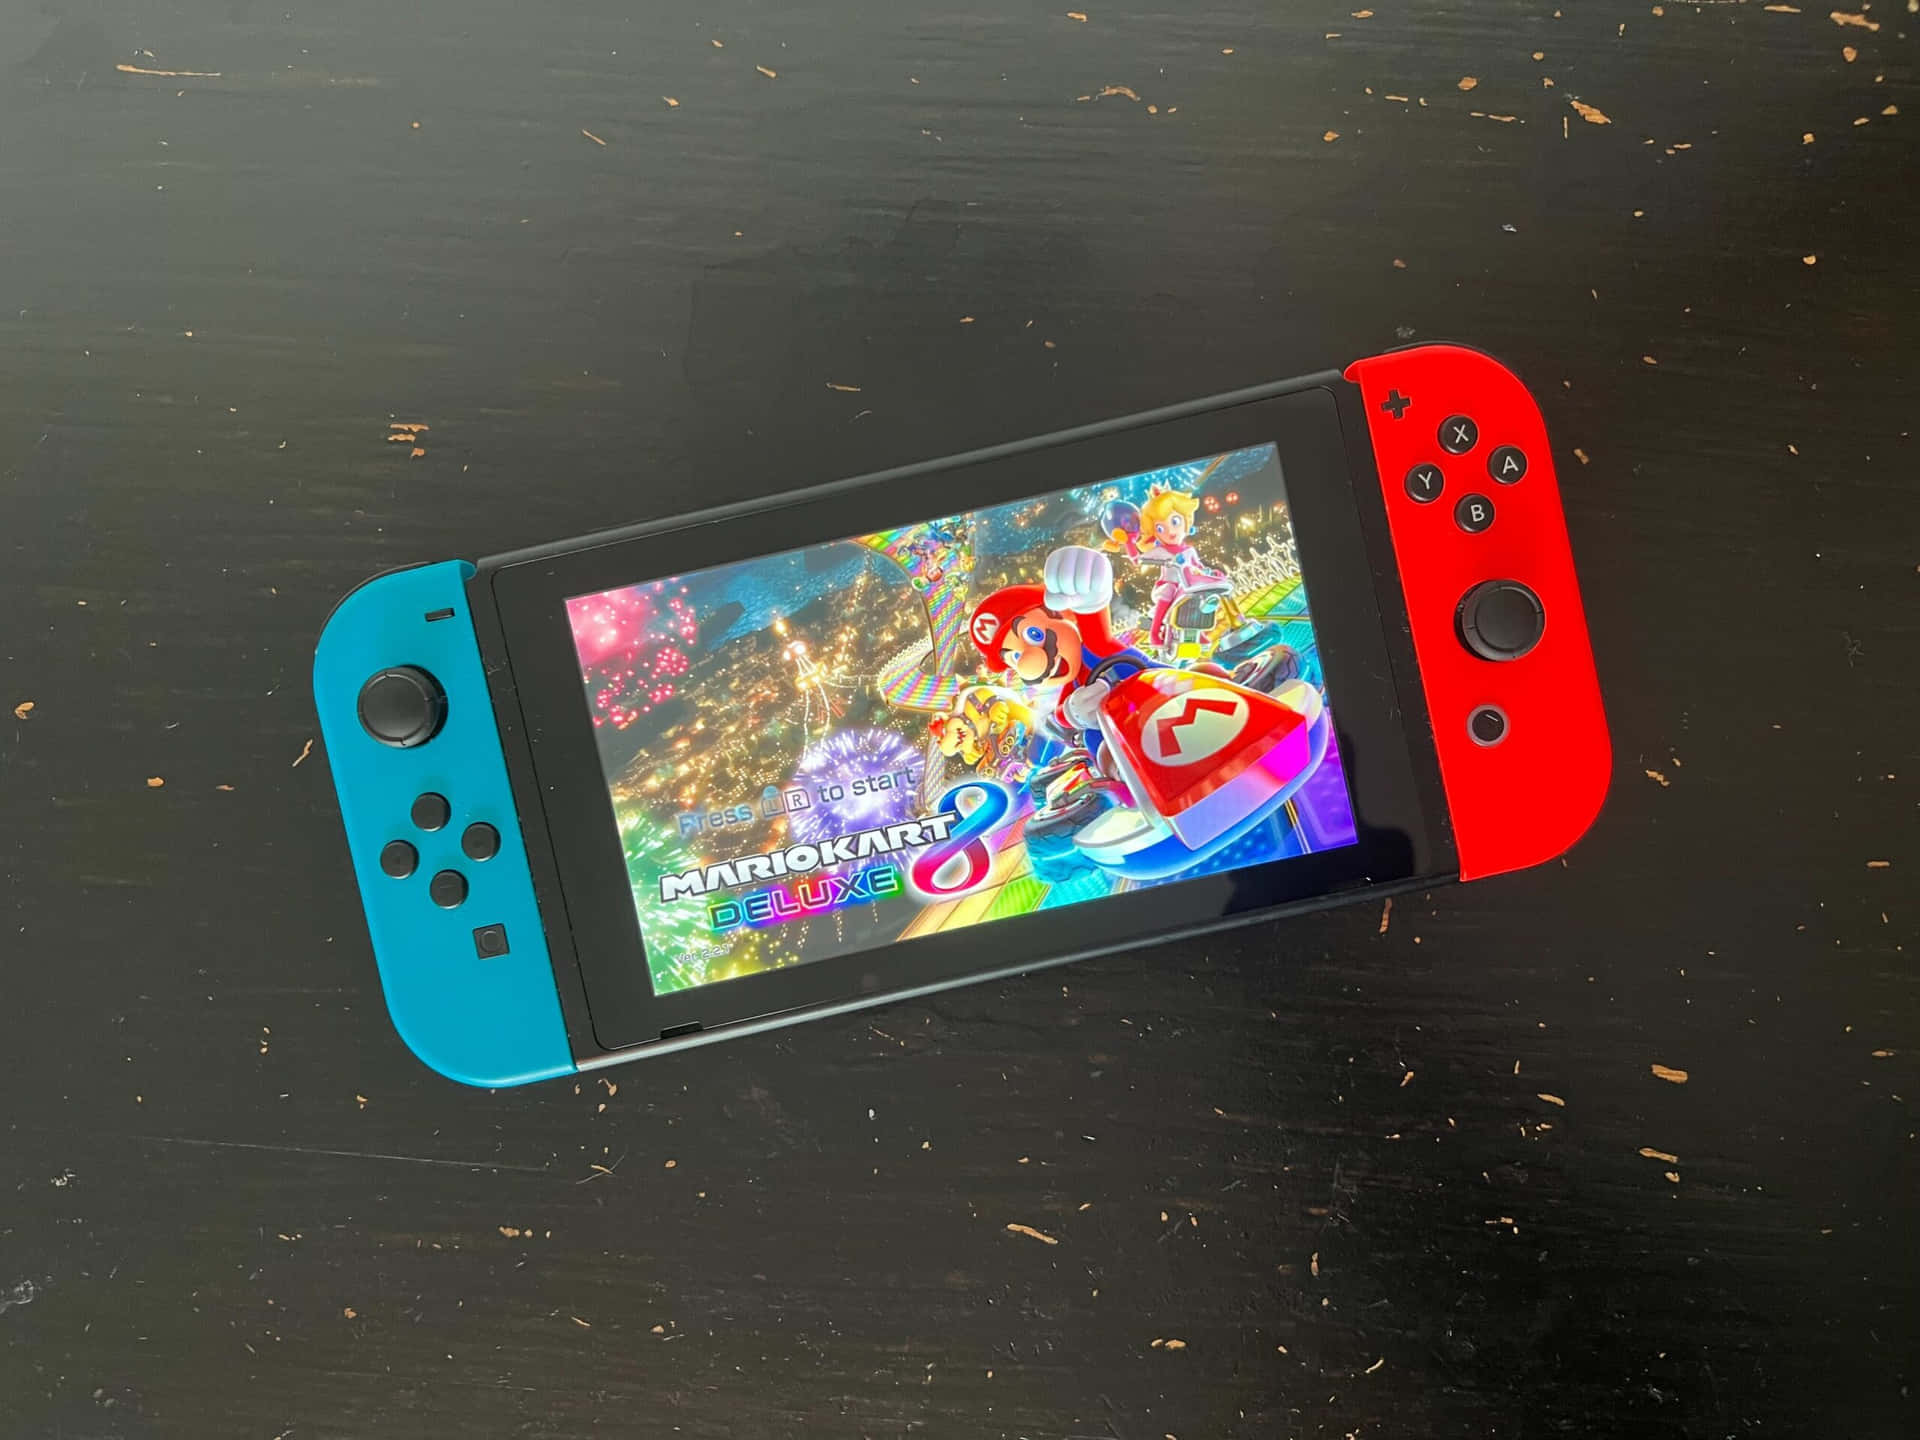 Lainnovadora Nintendo Switch Ofrece Una Experiencia De Juego Como Ninguna Otra.